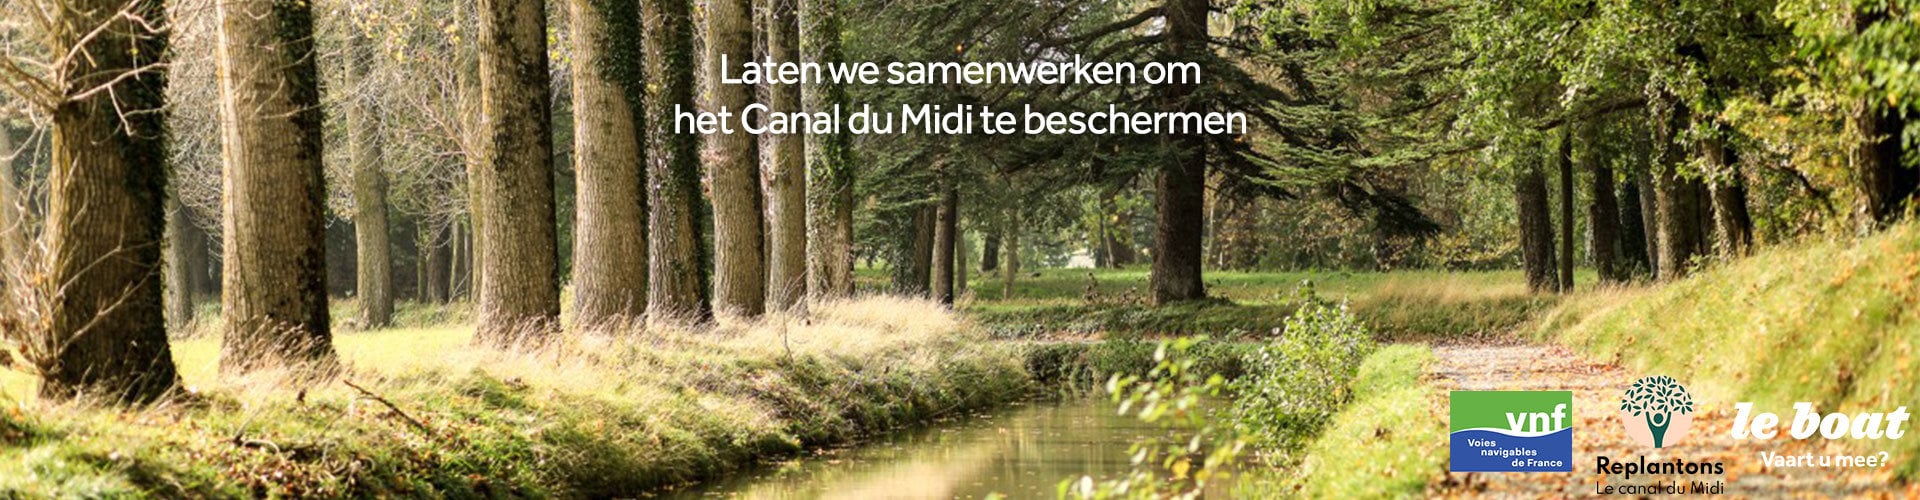 Laten we samenwerken om het Canal du Midi te beschermen